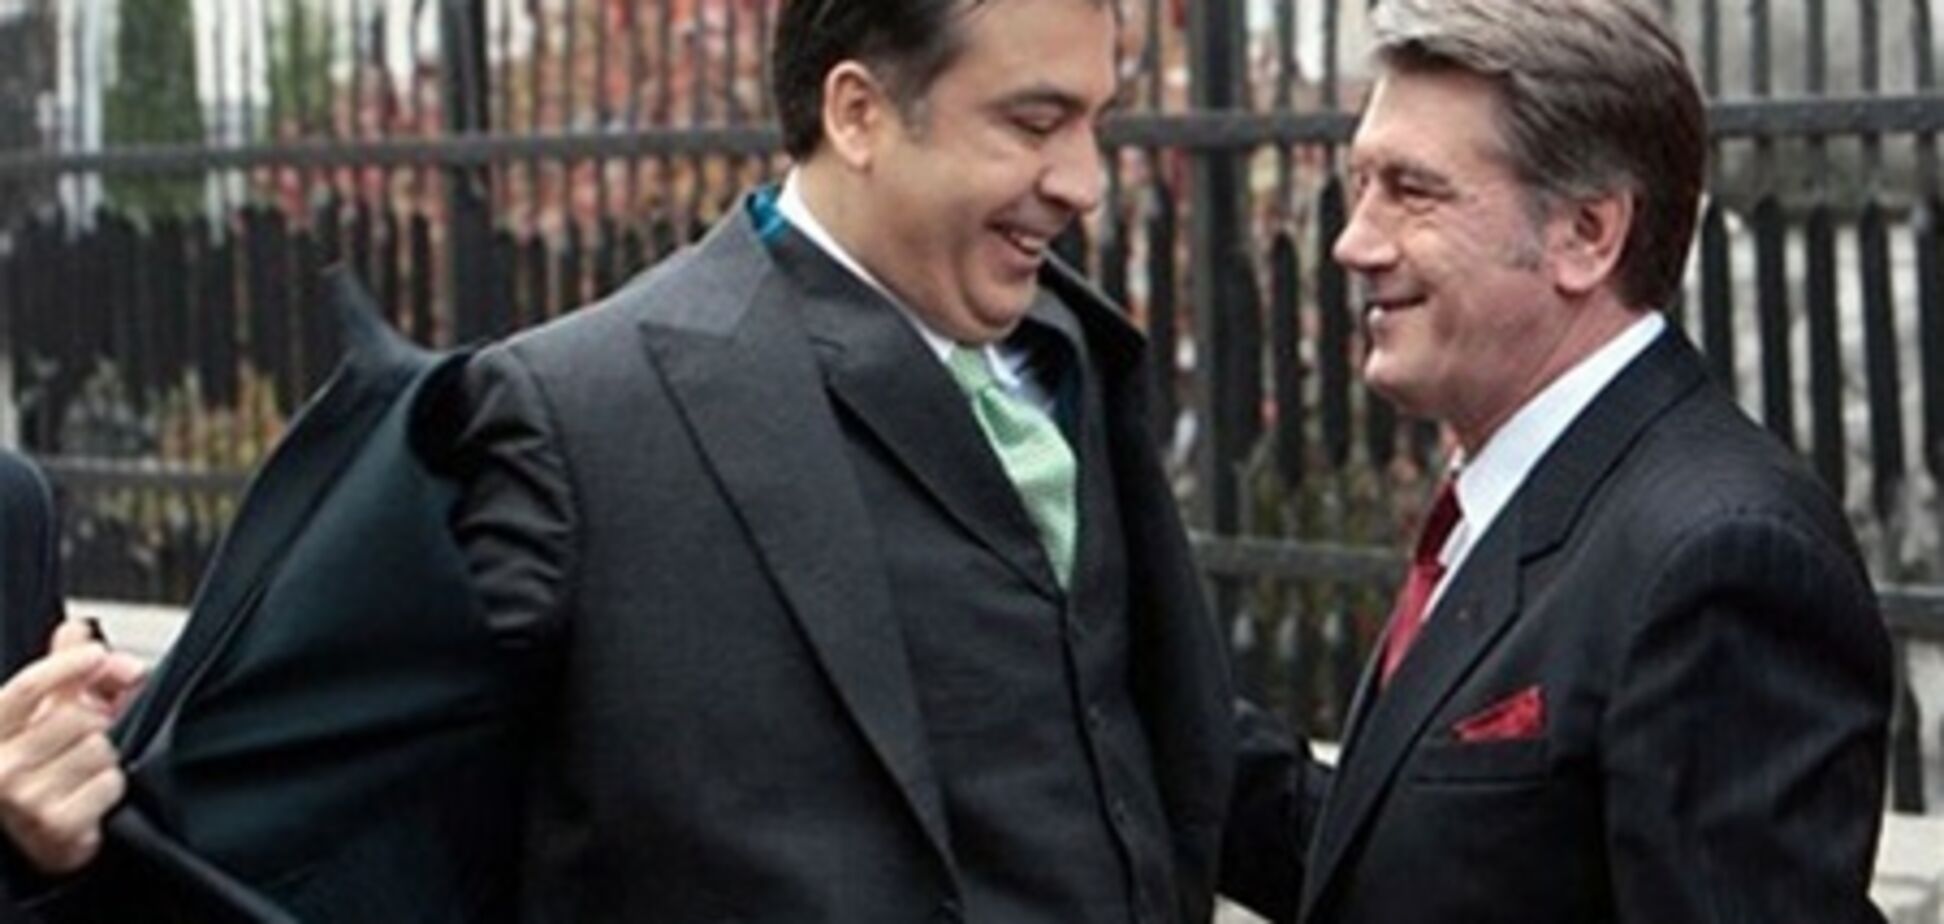 Саакашвили тратил на Ющенко бюджетные деньги - СМИ